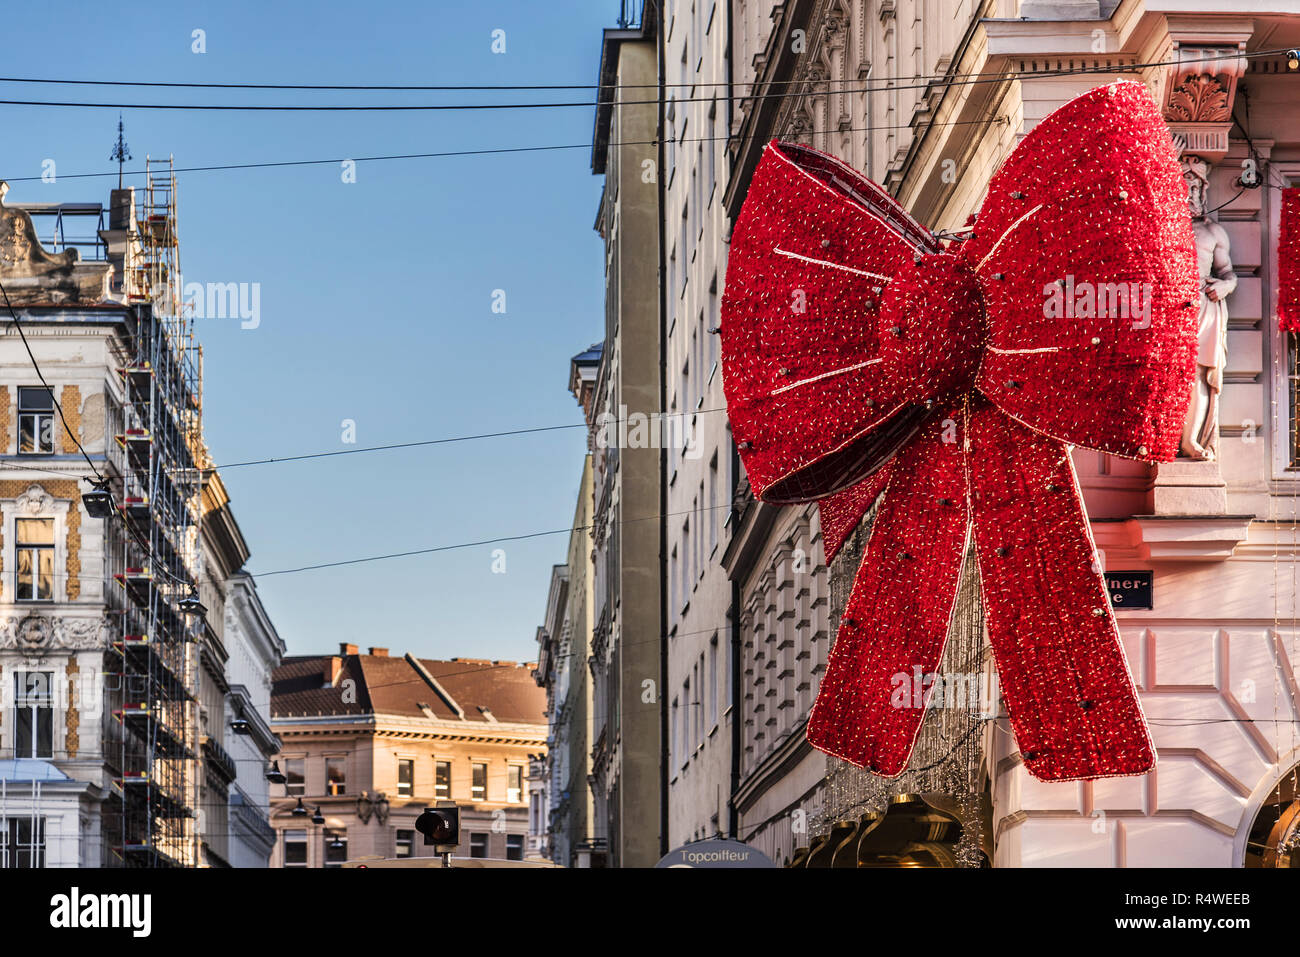 Wien, Österreich, 29. Dezember 2017. Riesige Weihnachten rote Schleife auf Popp und Kretschmer Kaufhaus in Wien. Giant red ribbon Weihnachten Girlande decorat Stockfoto